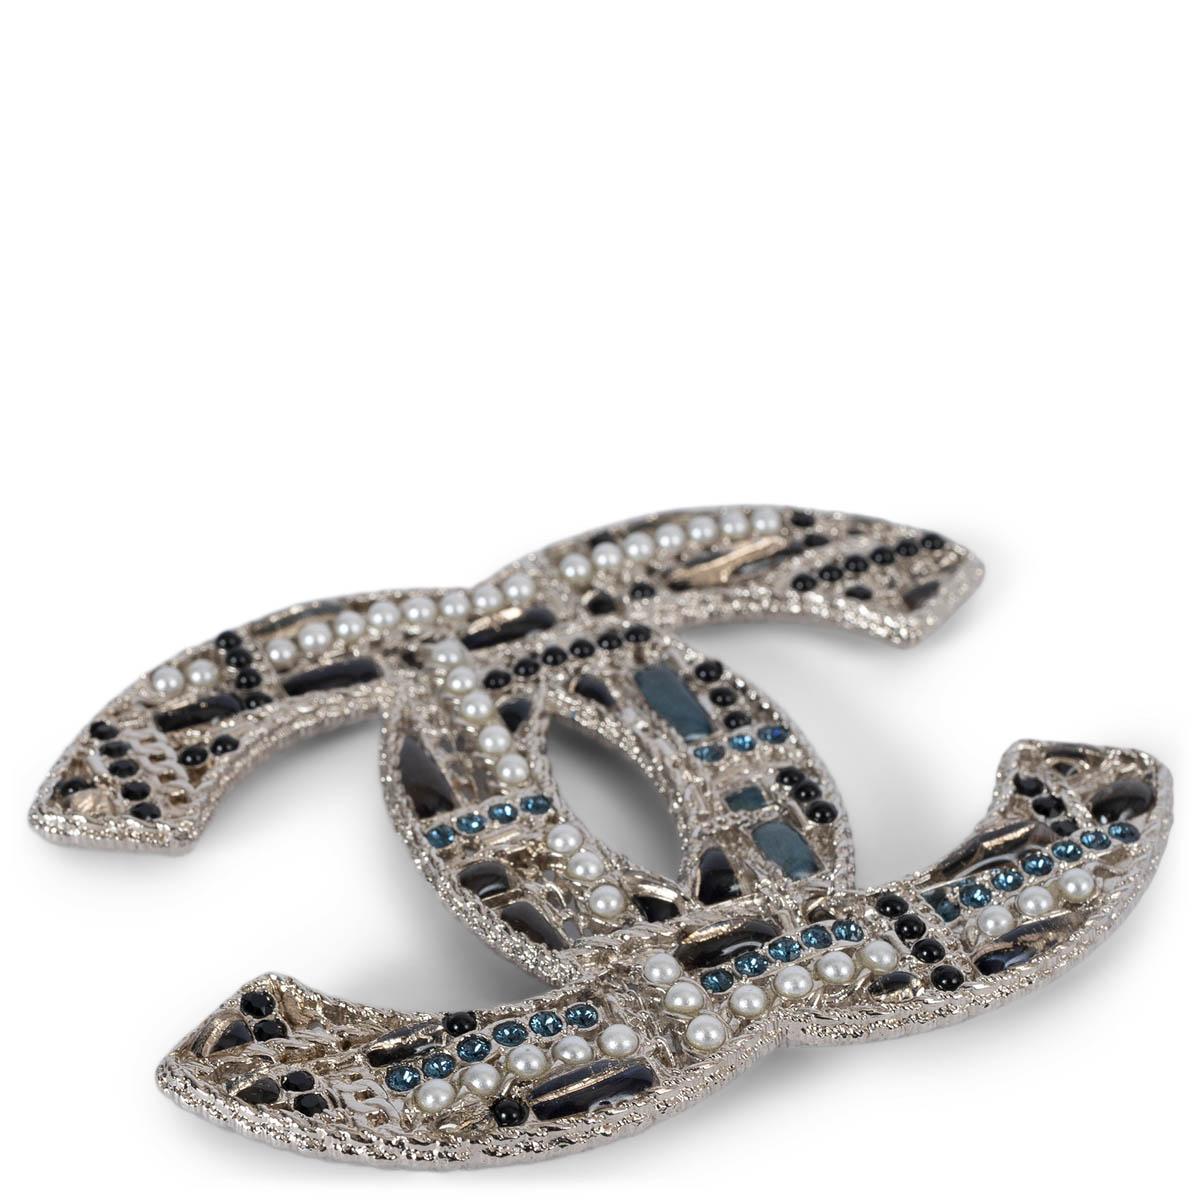 100% authentische Chanel große CC-Brosche aus silbernem Metall, verziert mit schwarzen und grauen Steinen, Kunstperlen und blauen Kristallen. Wurde getragen und ist in ausgezeichnetem Zustand. Wird mit Staubbeutel geliefert. 

2019